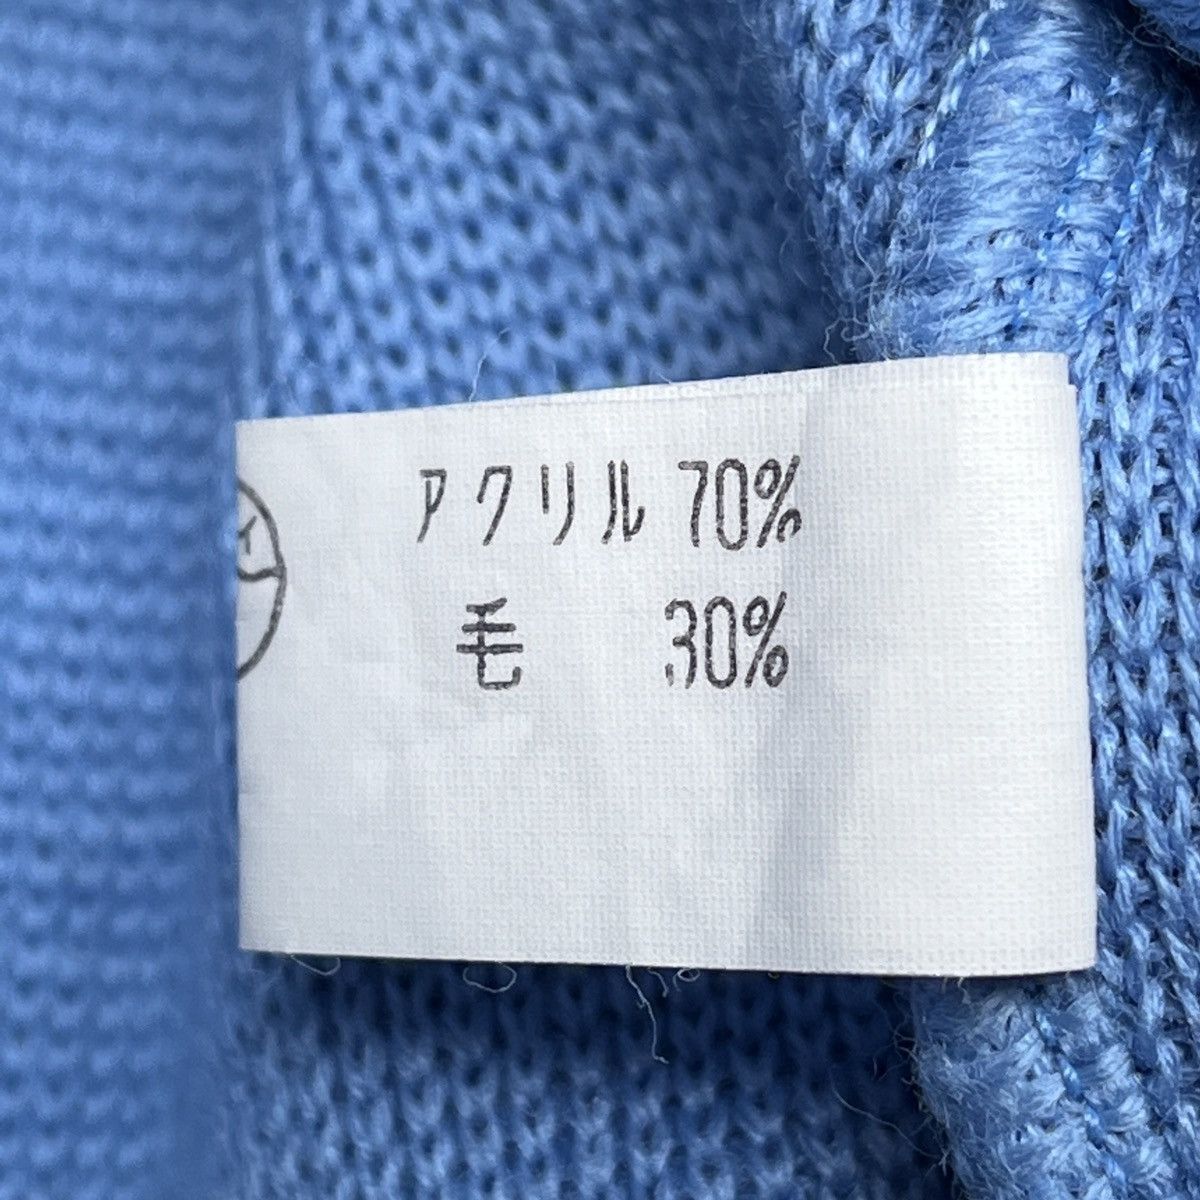 Japan Blue - Vintage Blue Sweater Knitwear Japan - 7